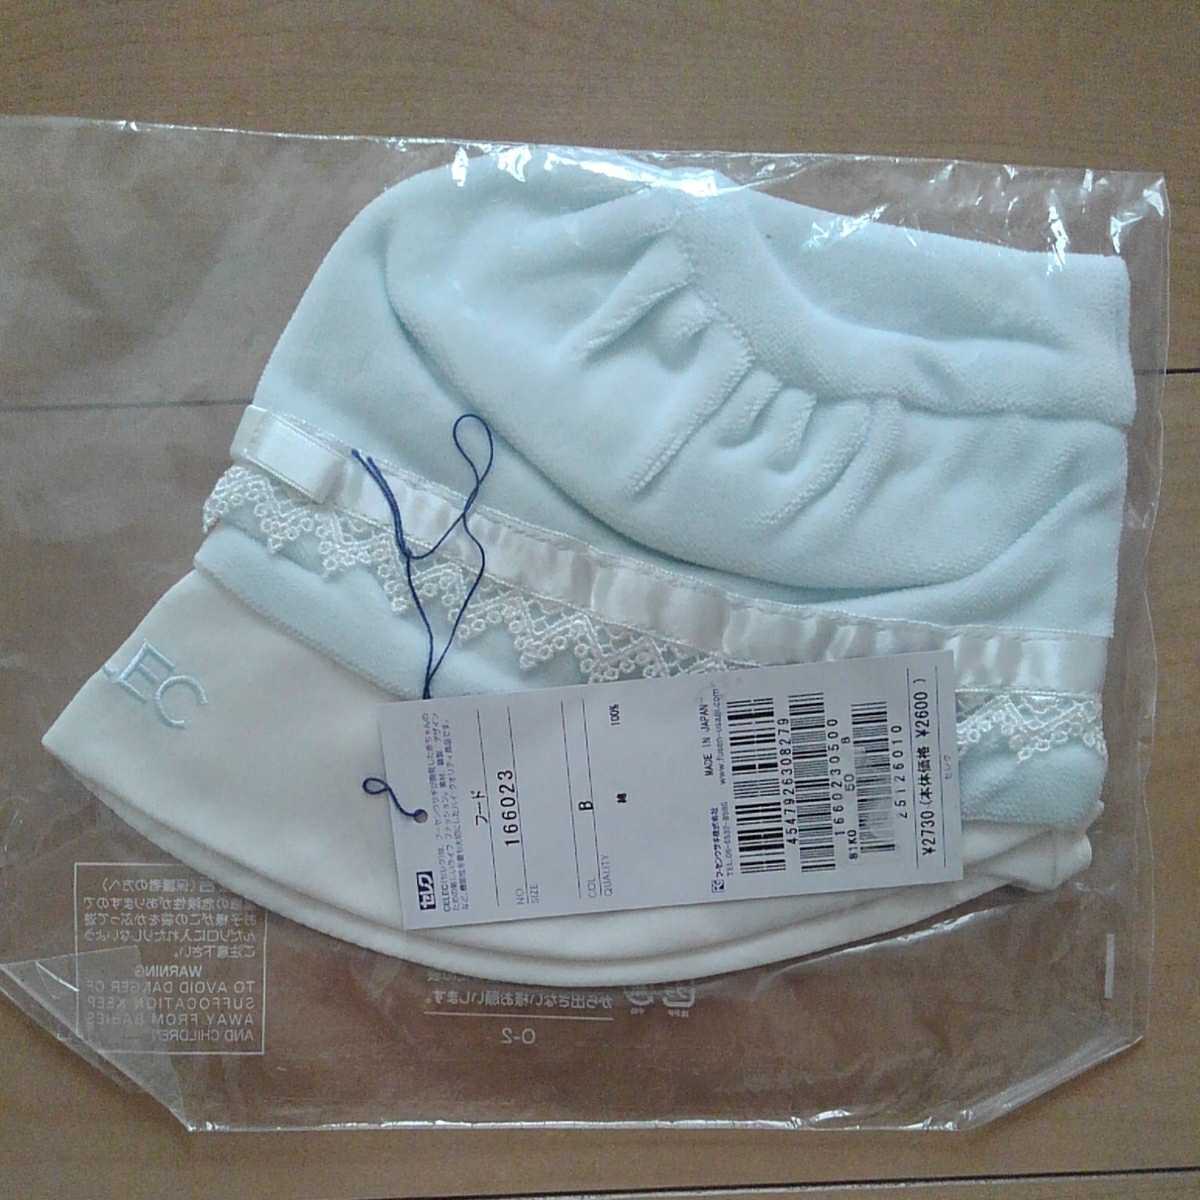 * новый товар *CELEC* select * рождение подготовка празднование рождения * мужчина * одеяло, короткий рукав корпус Mini, шляпа *13860 иен * новорожденный 